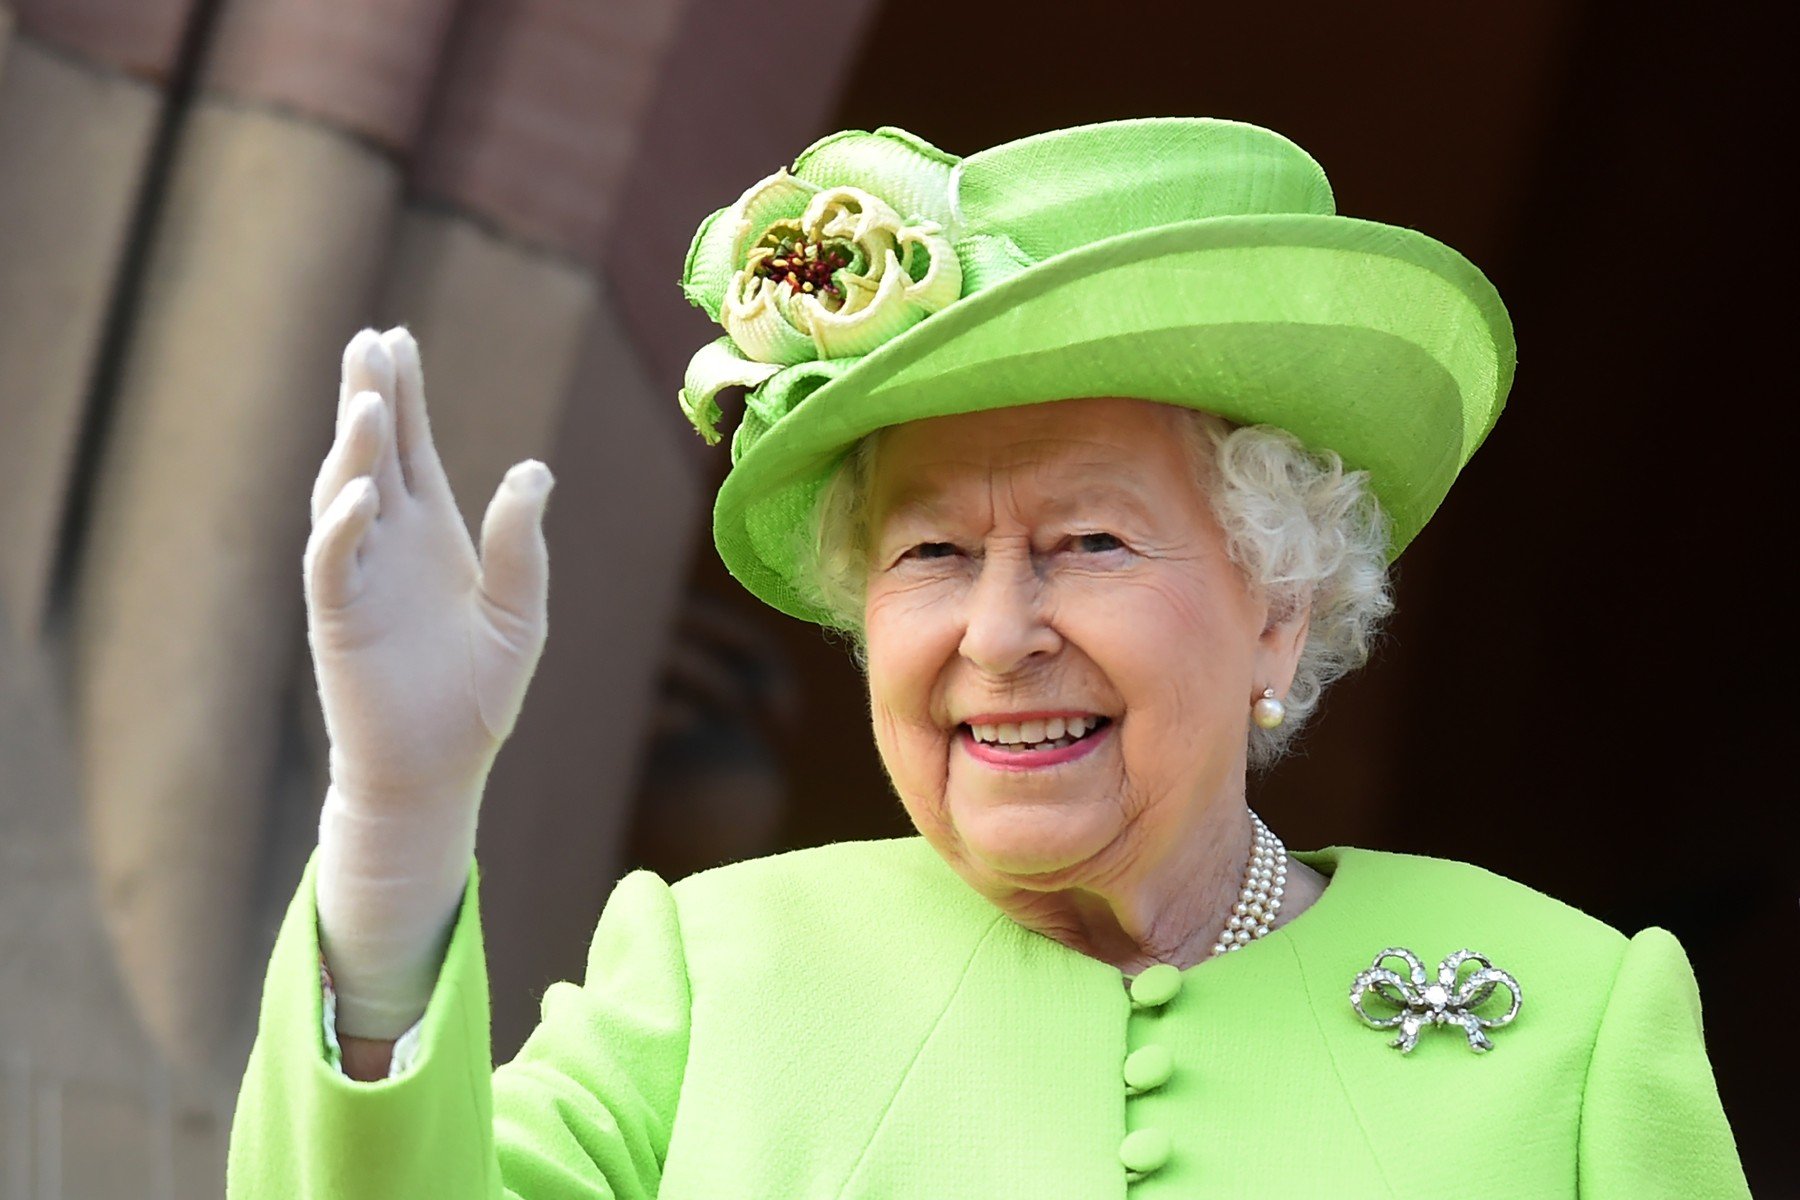  Moartea Reginei Elisabeta a II-a: Site-ul web al familiei regale britanice, ”dezactivat temporar”